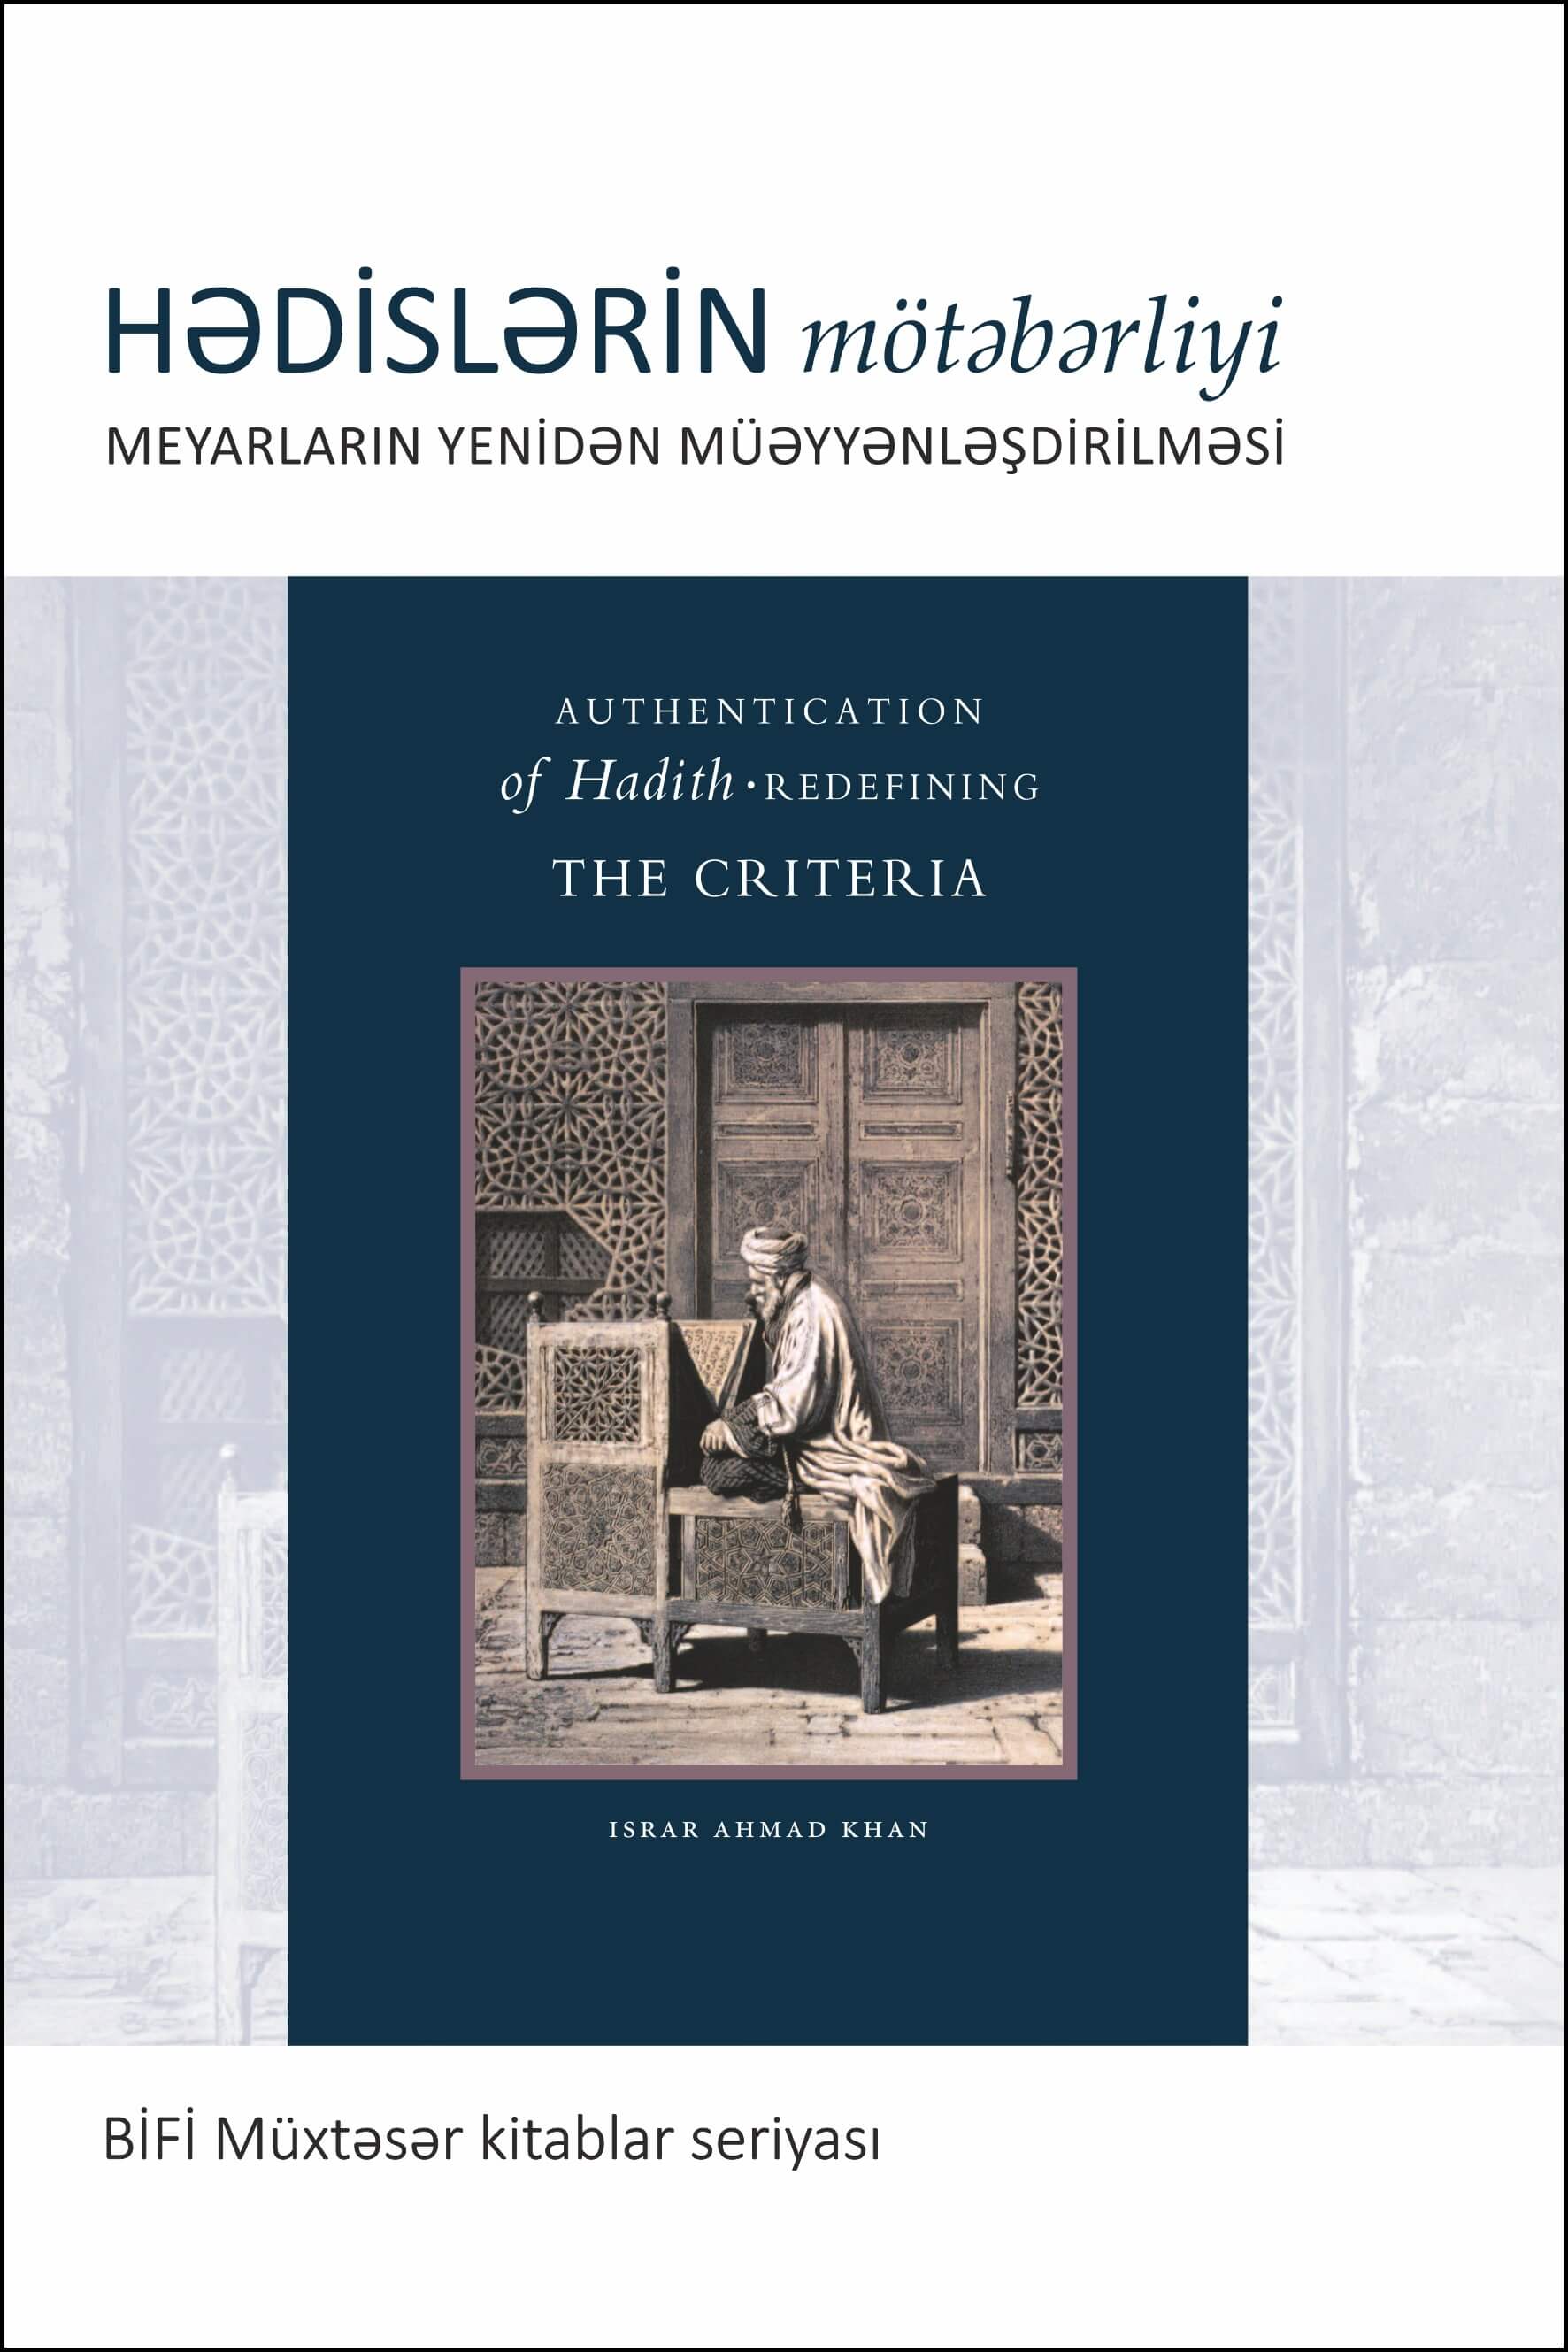 Azeri: BİFİ Müxtəsər kitablar seriyası: Hədislərin mötəbərliyi: meyarların yenidən müəyyənləşdirilməsi (Books-in-Brief: Authentication of Hadith: Redefining the Criteria)